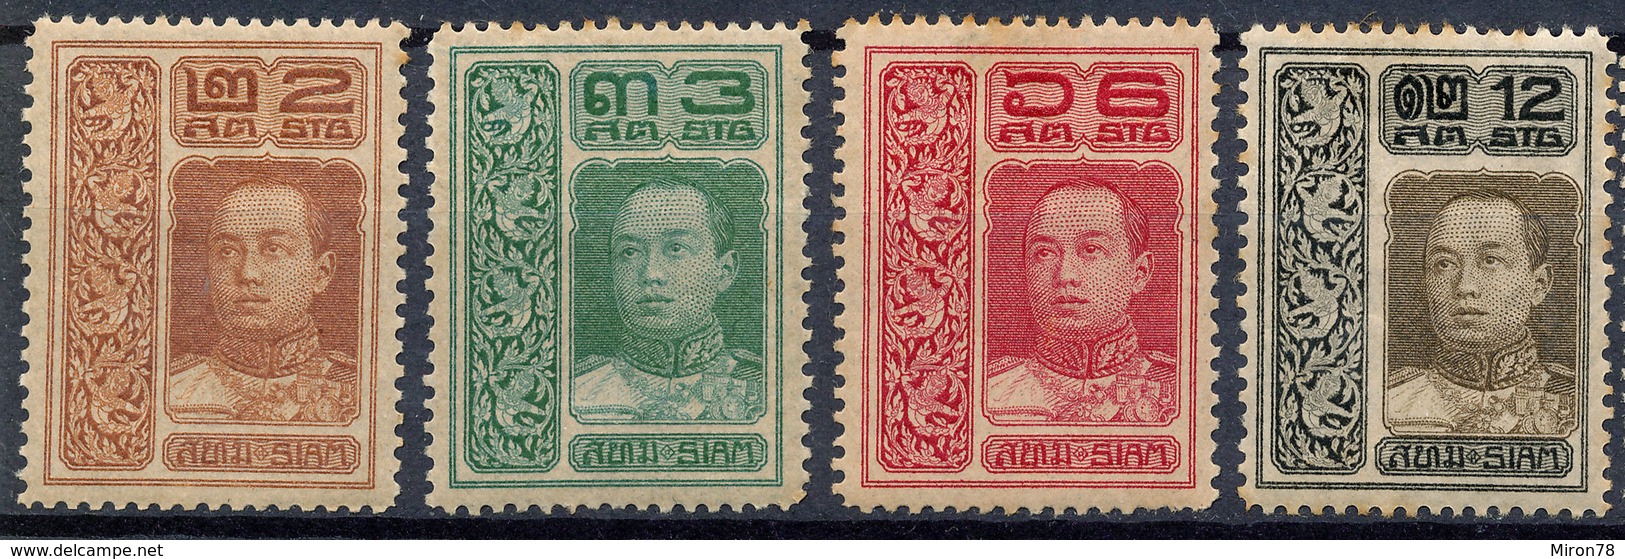 Stamp THAILAND,SIAM 1912 Mint Lot#49 - Thailand